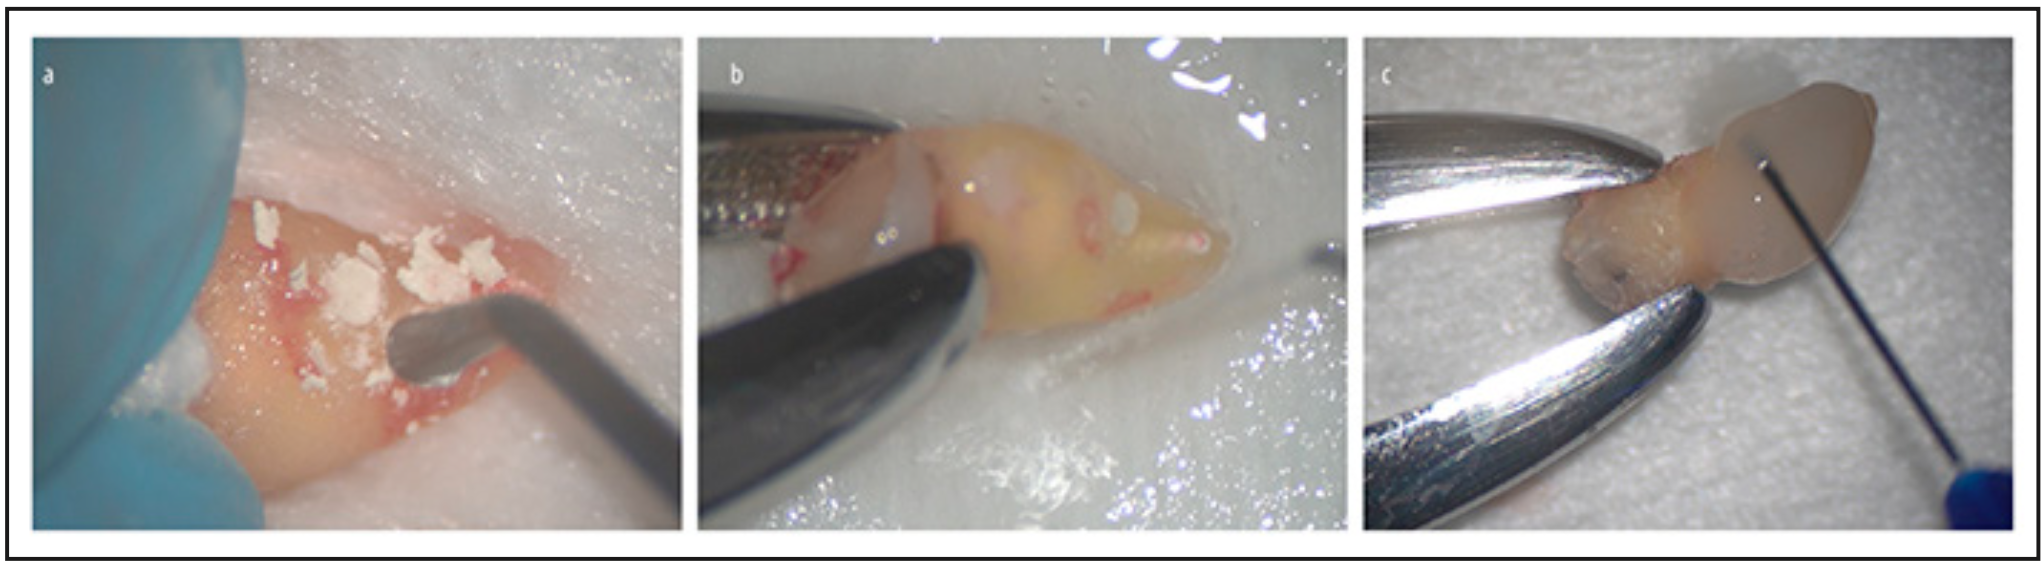 Figura 3. A): sellado con material biocerámico en consistencia de masilla (Onefil PT, Mediclus). B): acondicionamiento con EDTA (Prefgel, Straumann). C): aplicacion de amelogeninas en la superficie radicular (Emdogain, Straumann).